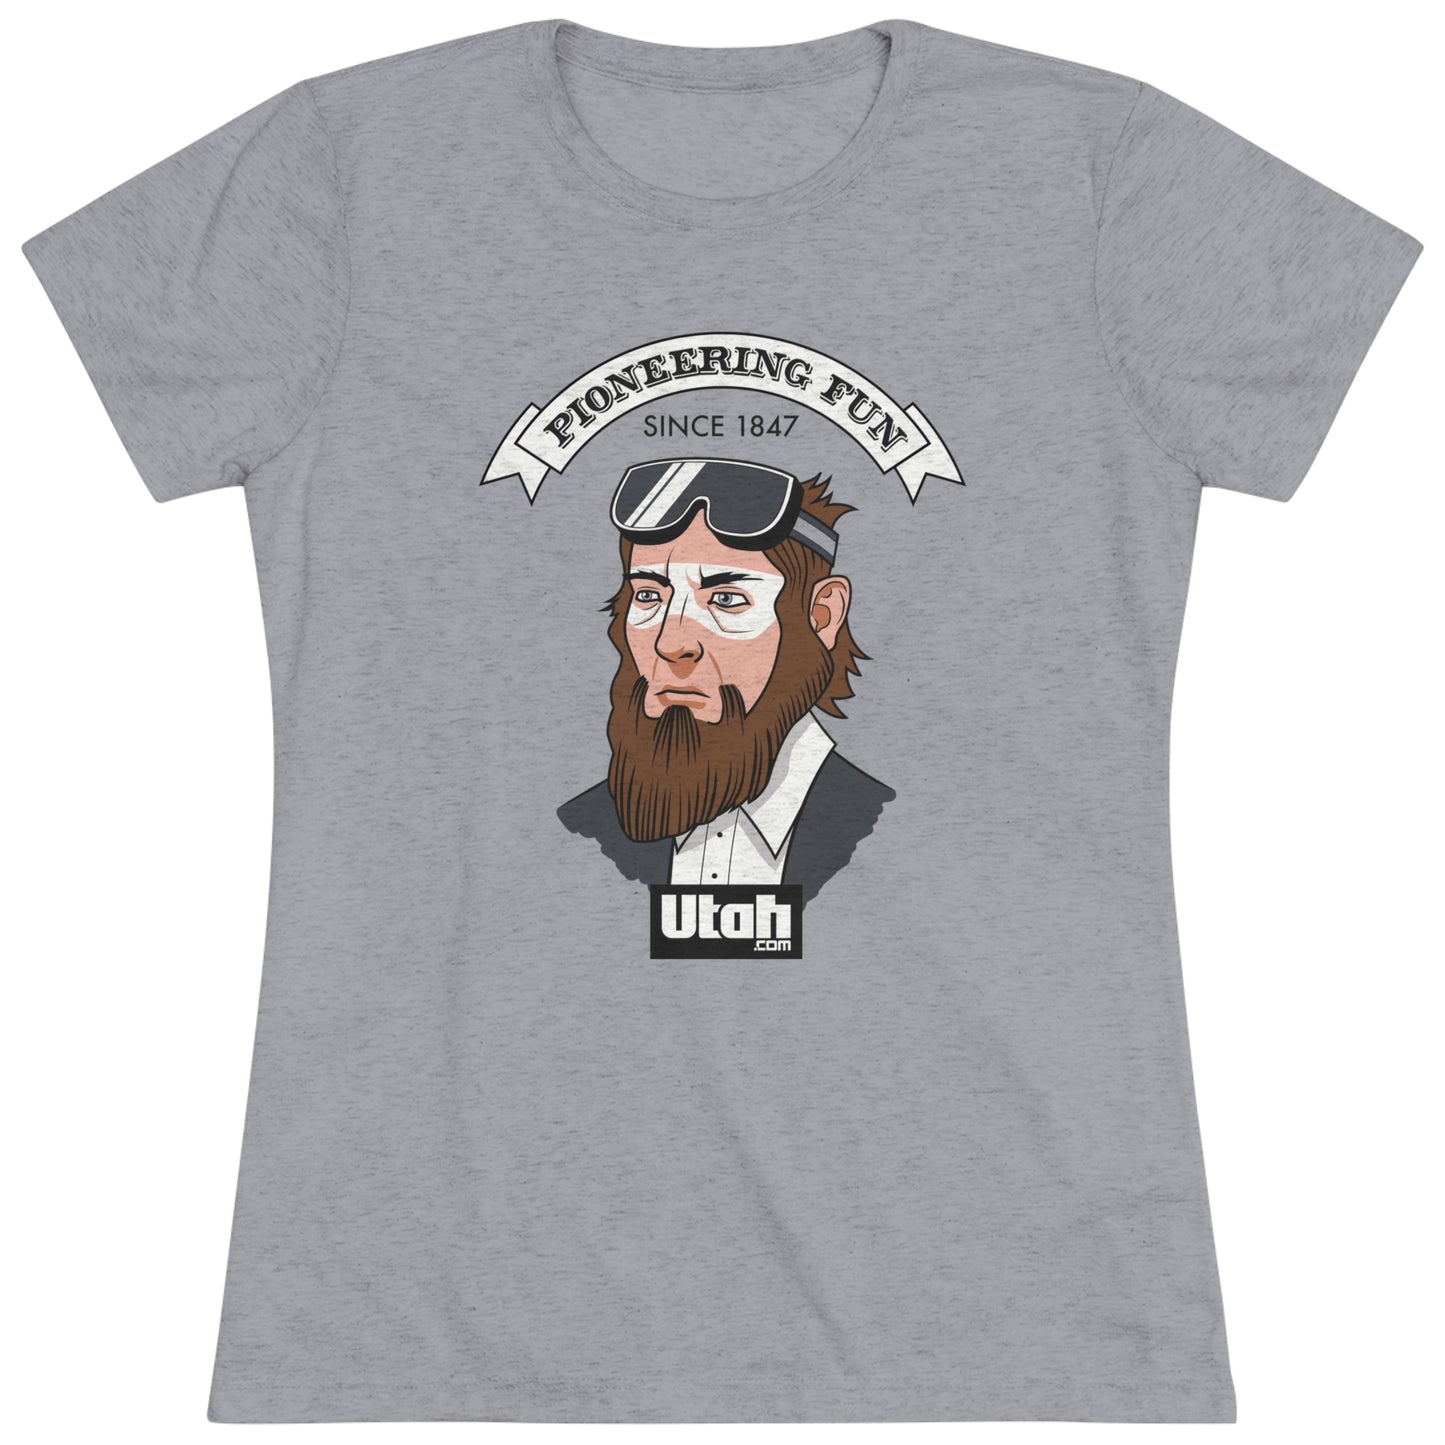 Women's "Pioneering Fun" t-shirt - Utah.com